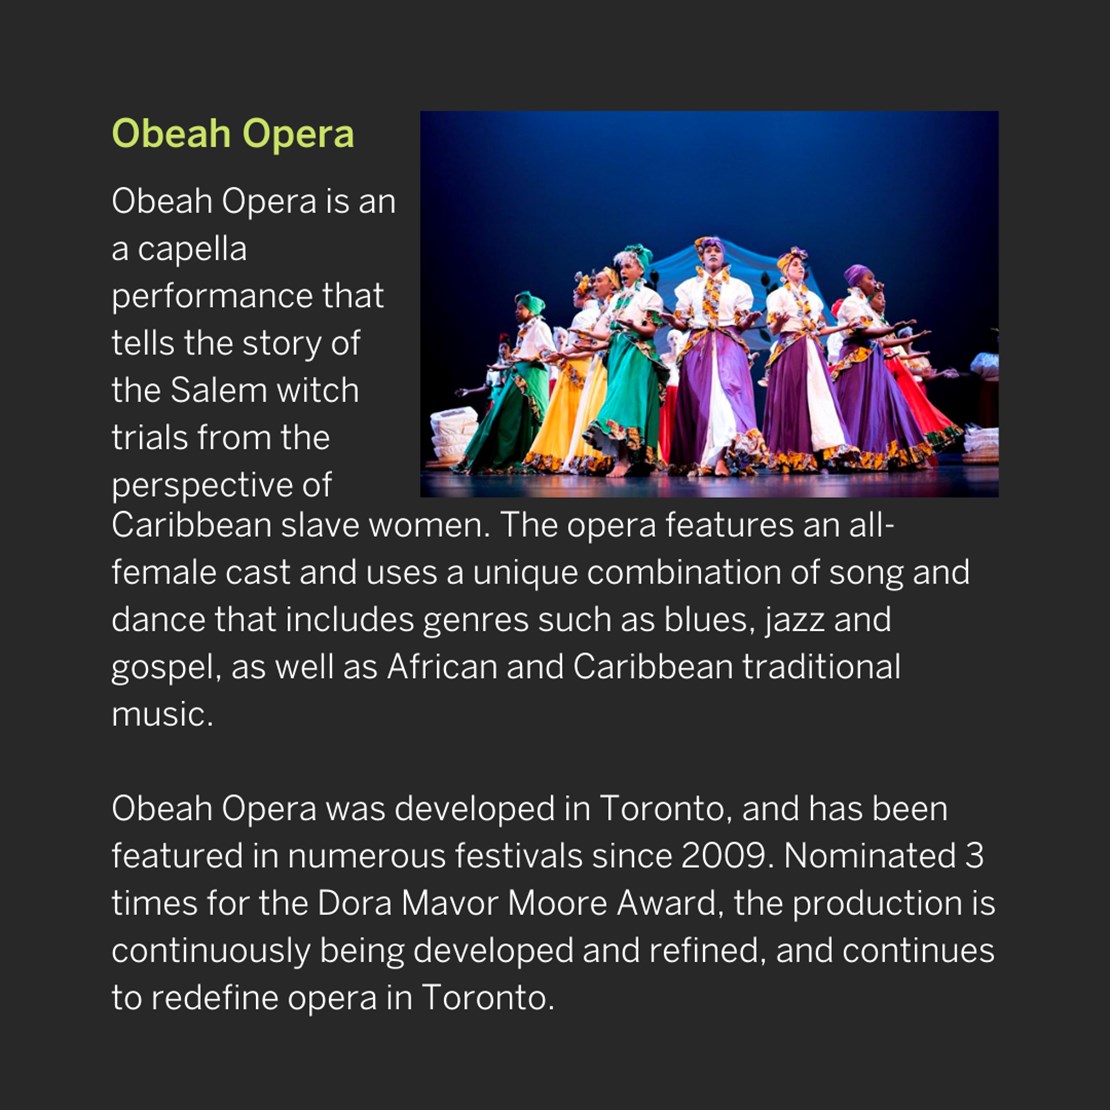 Obeah Opera